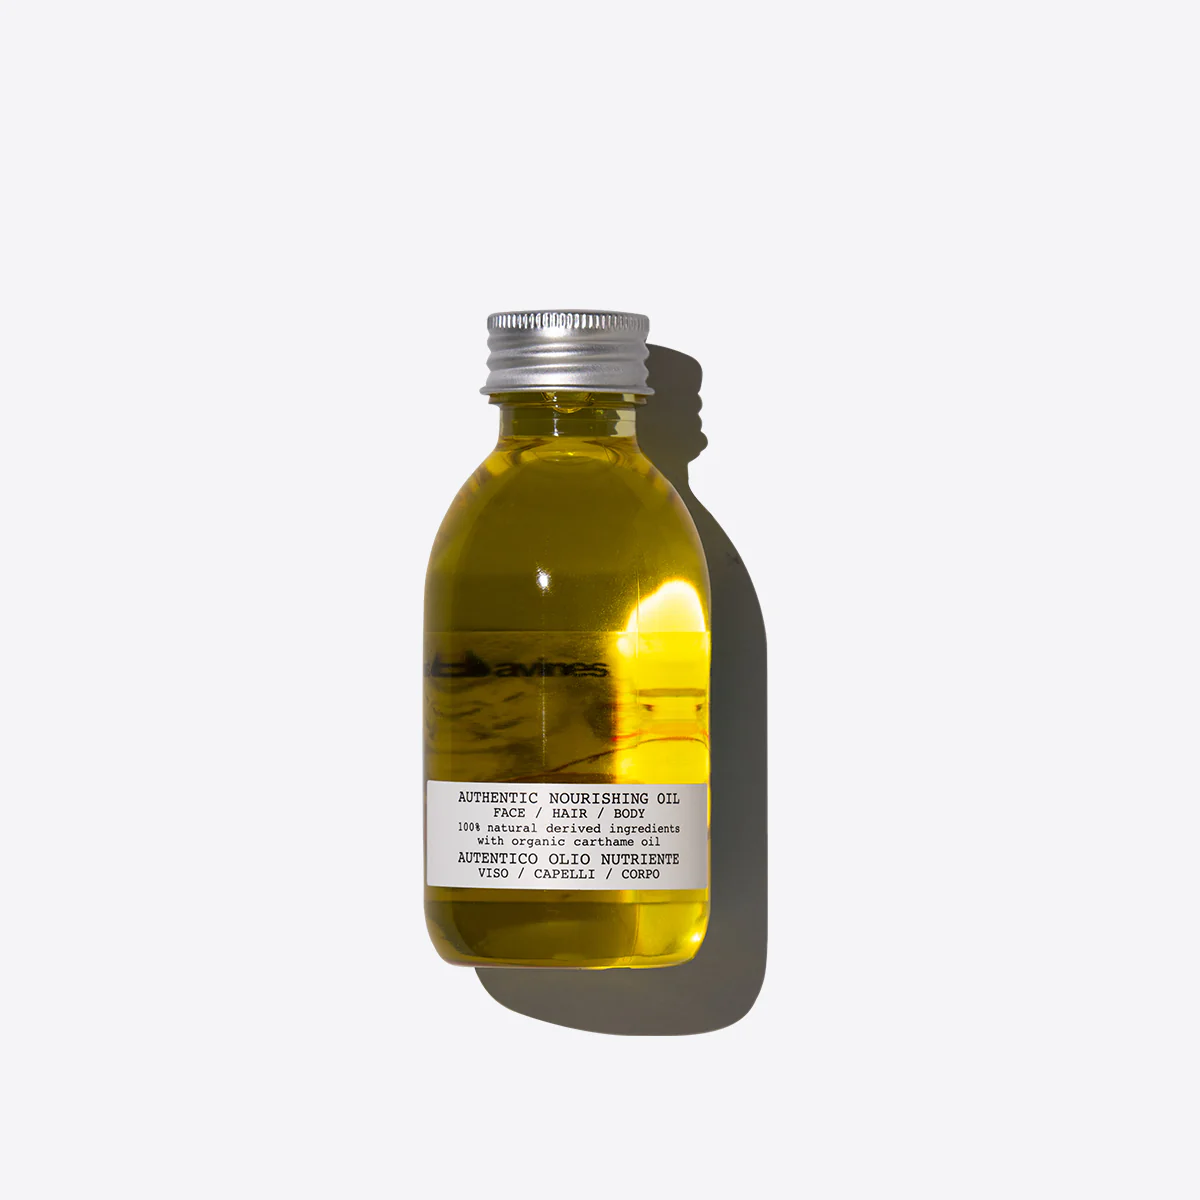 Authentic Nourishing Oil - Питательное масло для лица, волос и тела , объем 140 мл - фото 1